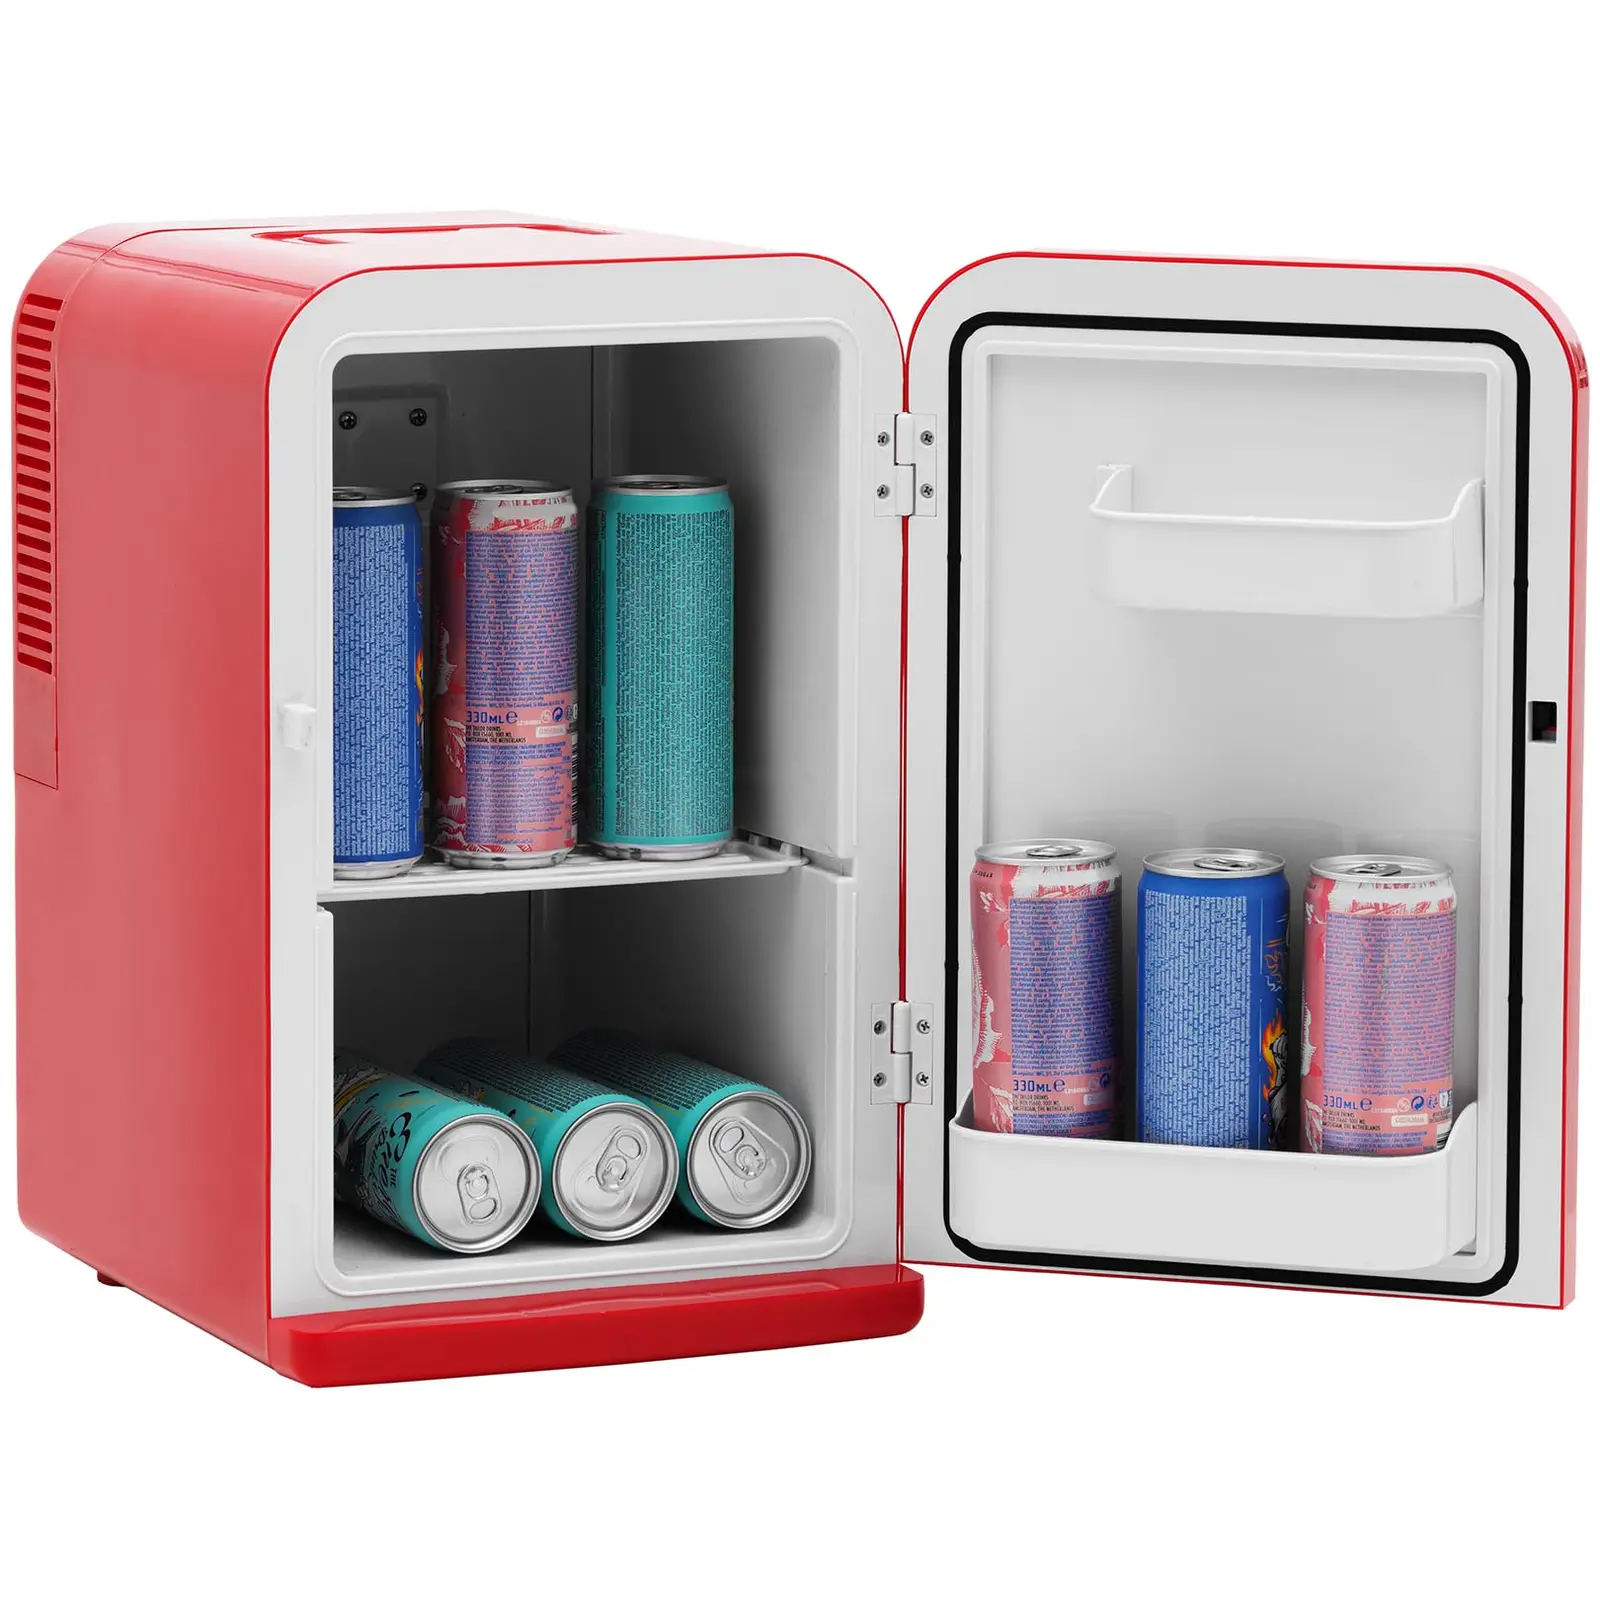 Mini-Kühlschrank 12 V / 230 V - 2-in-1-Gerät mit Warmhaltefunktion